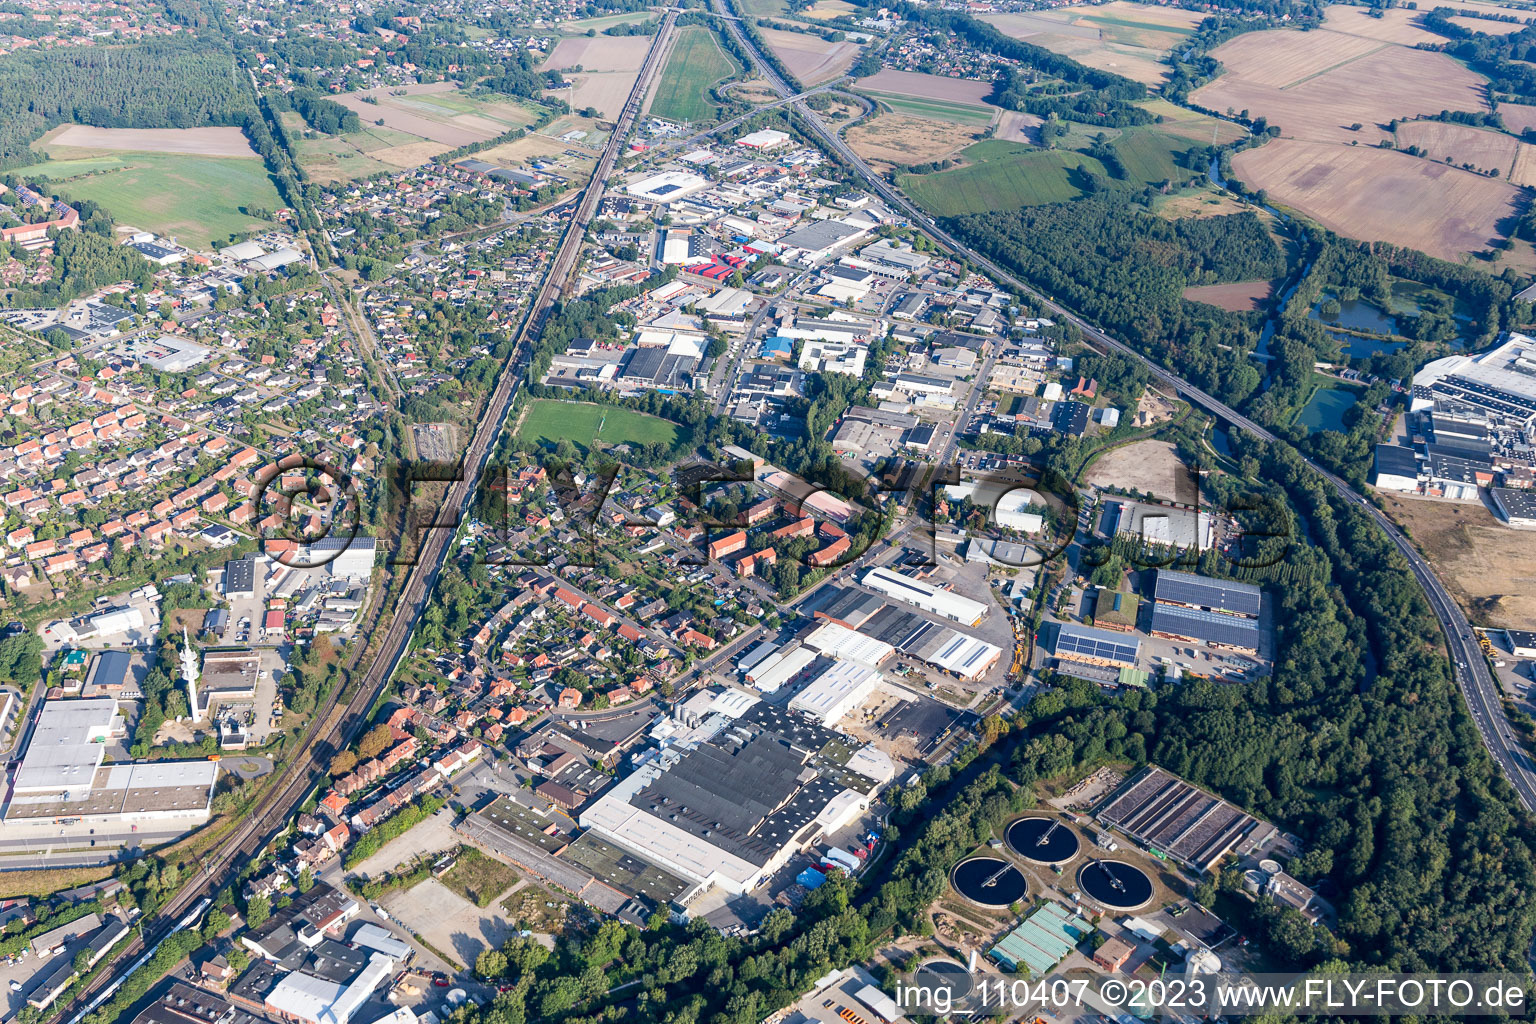 Lüneburg im Bundesland Niedersachsen, Deutschland von der Drohne aus gesehen